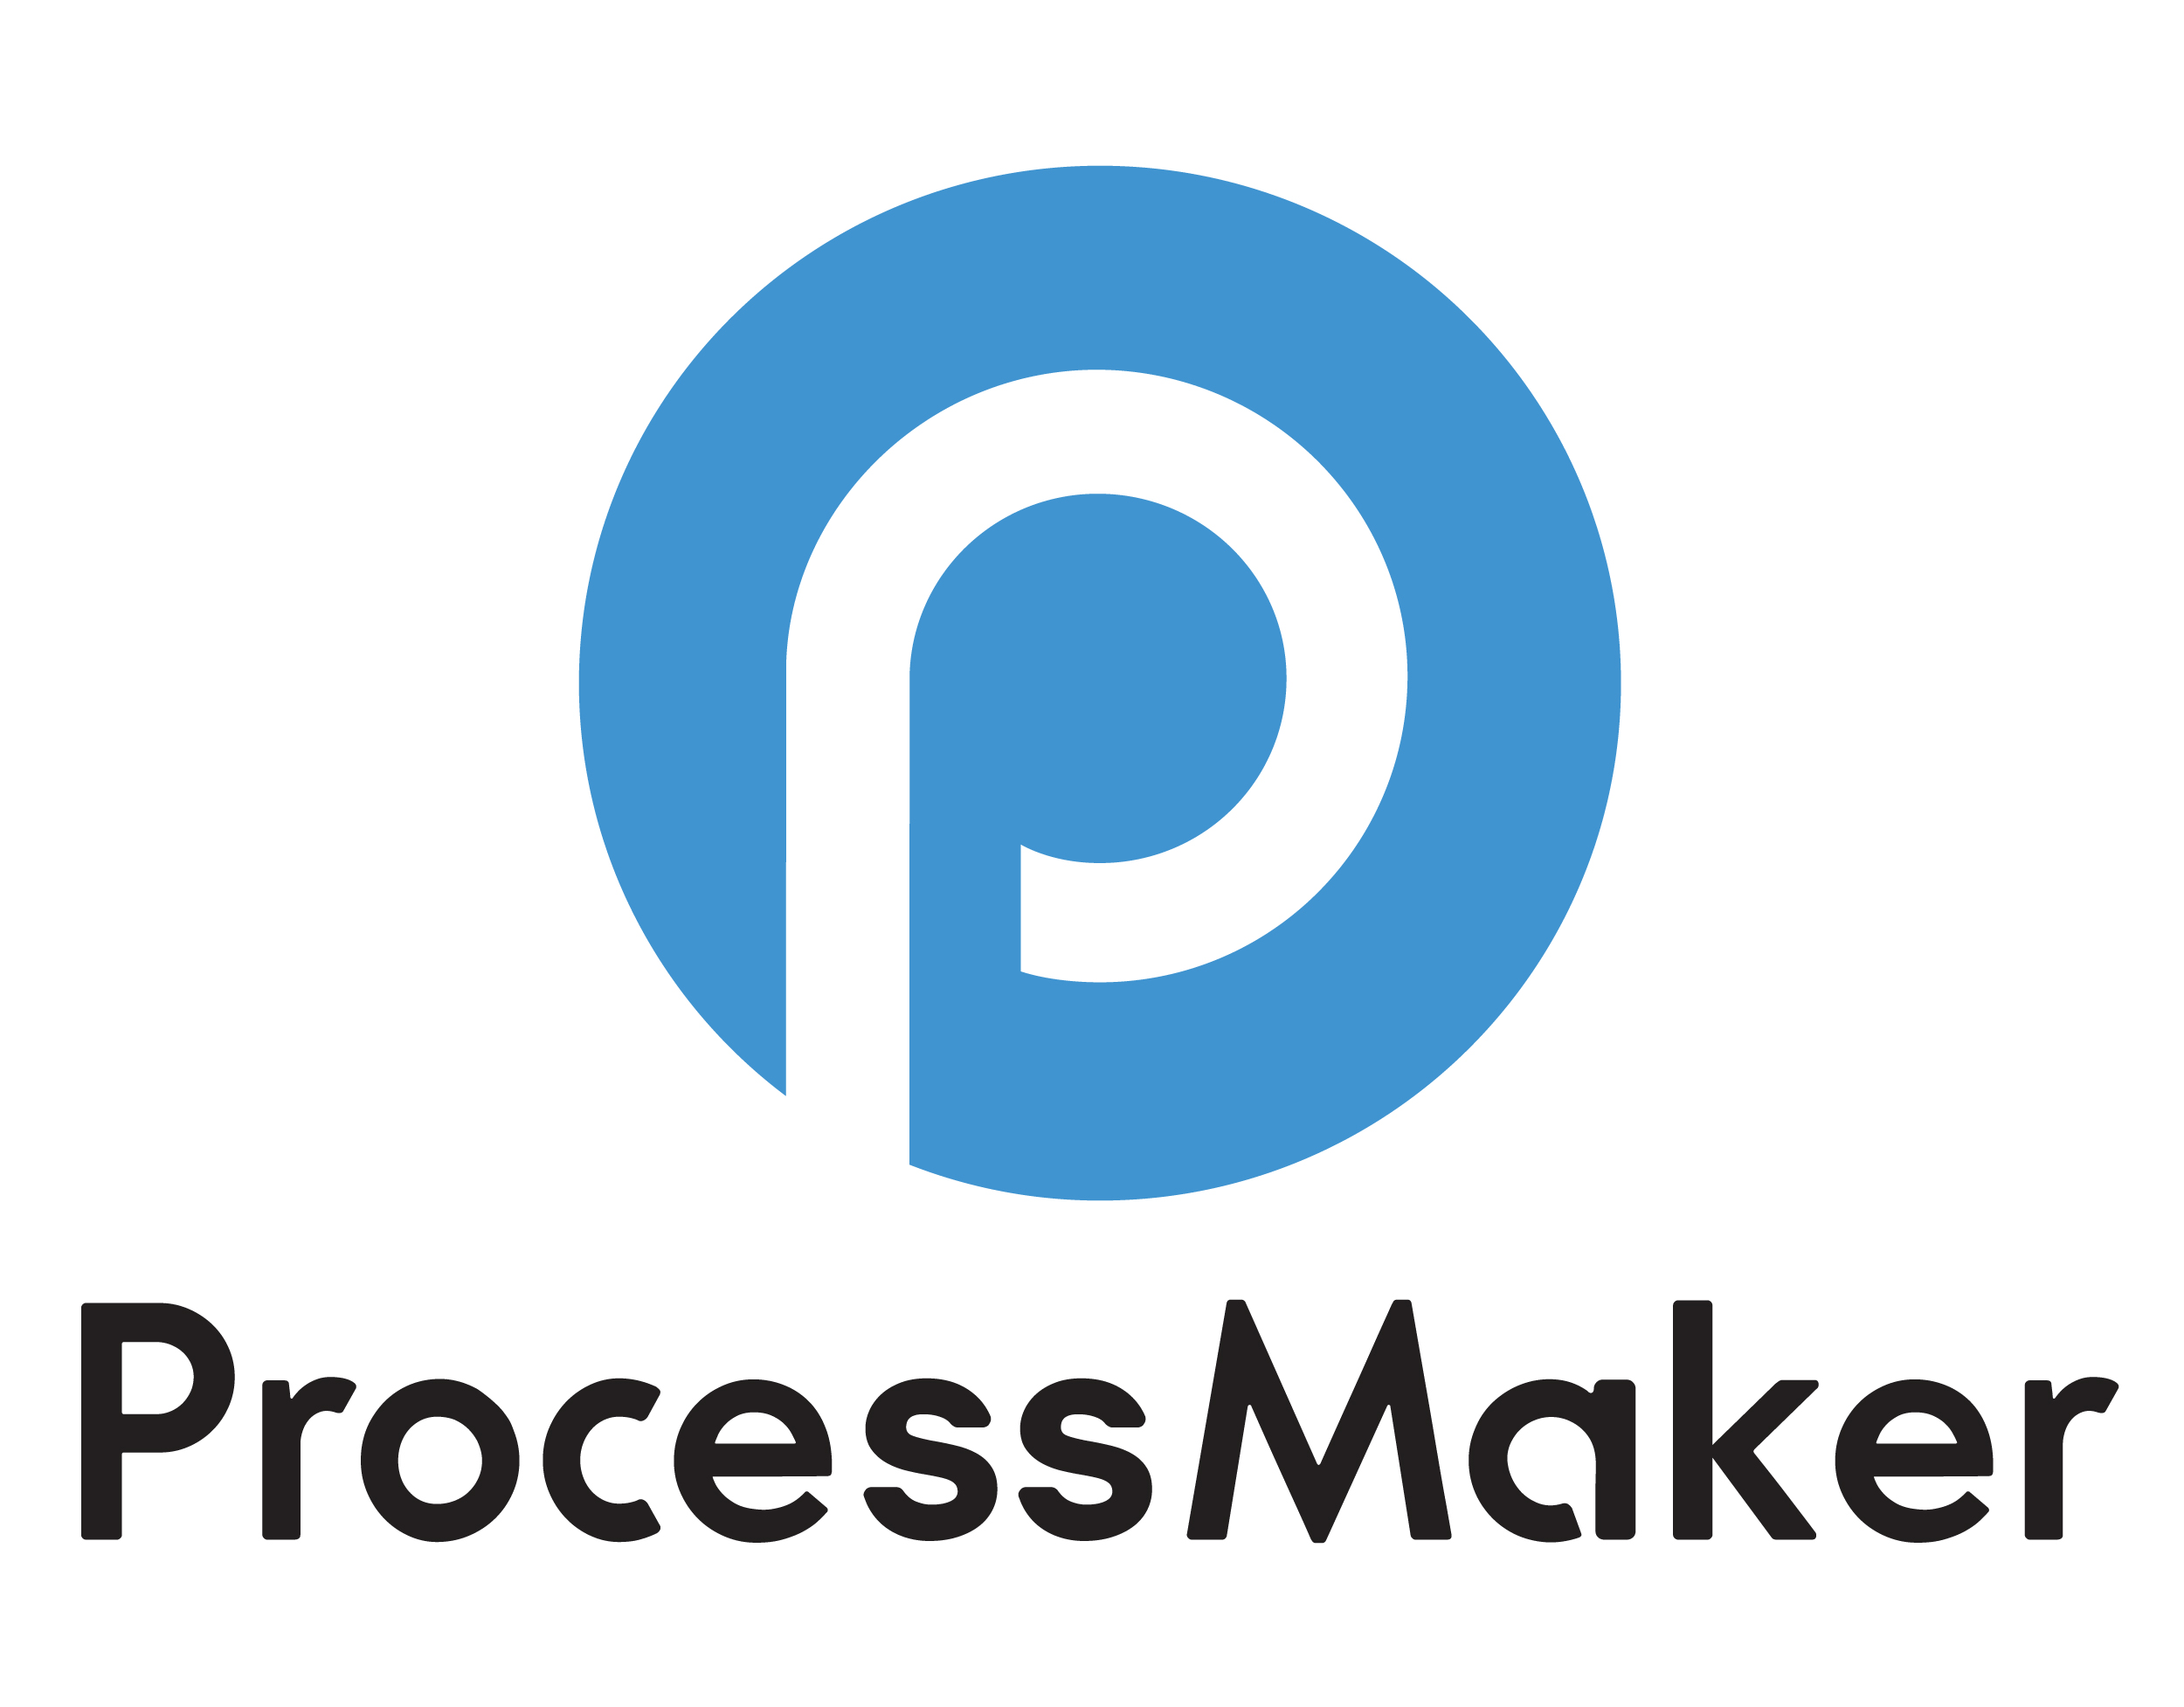 Process Maker Logo in Black & White